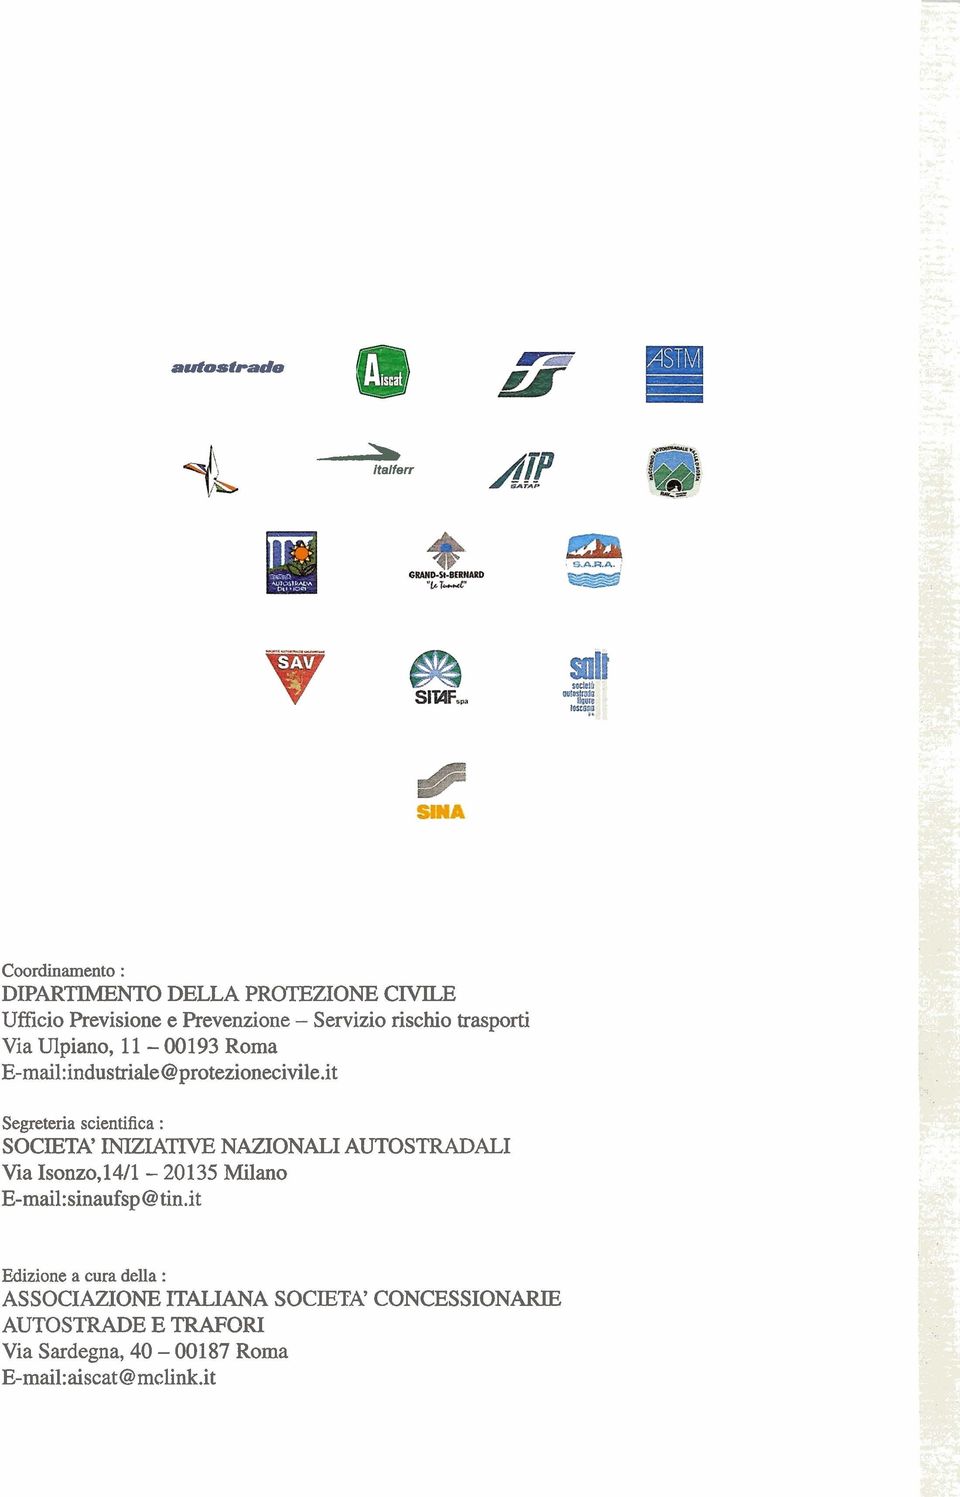 it Segreteria scientifica : SOCIETA' INIZLATIVE NAZIONALI AUTOSTRADALI Via Isonzo,l4/1-20135 Milano E-mail:sinaufsp@